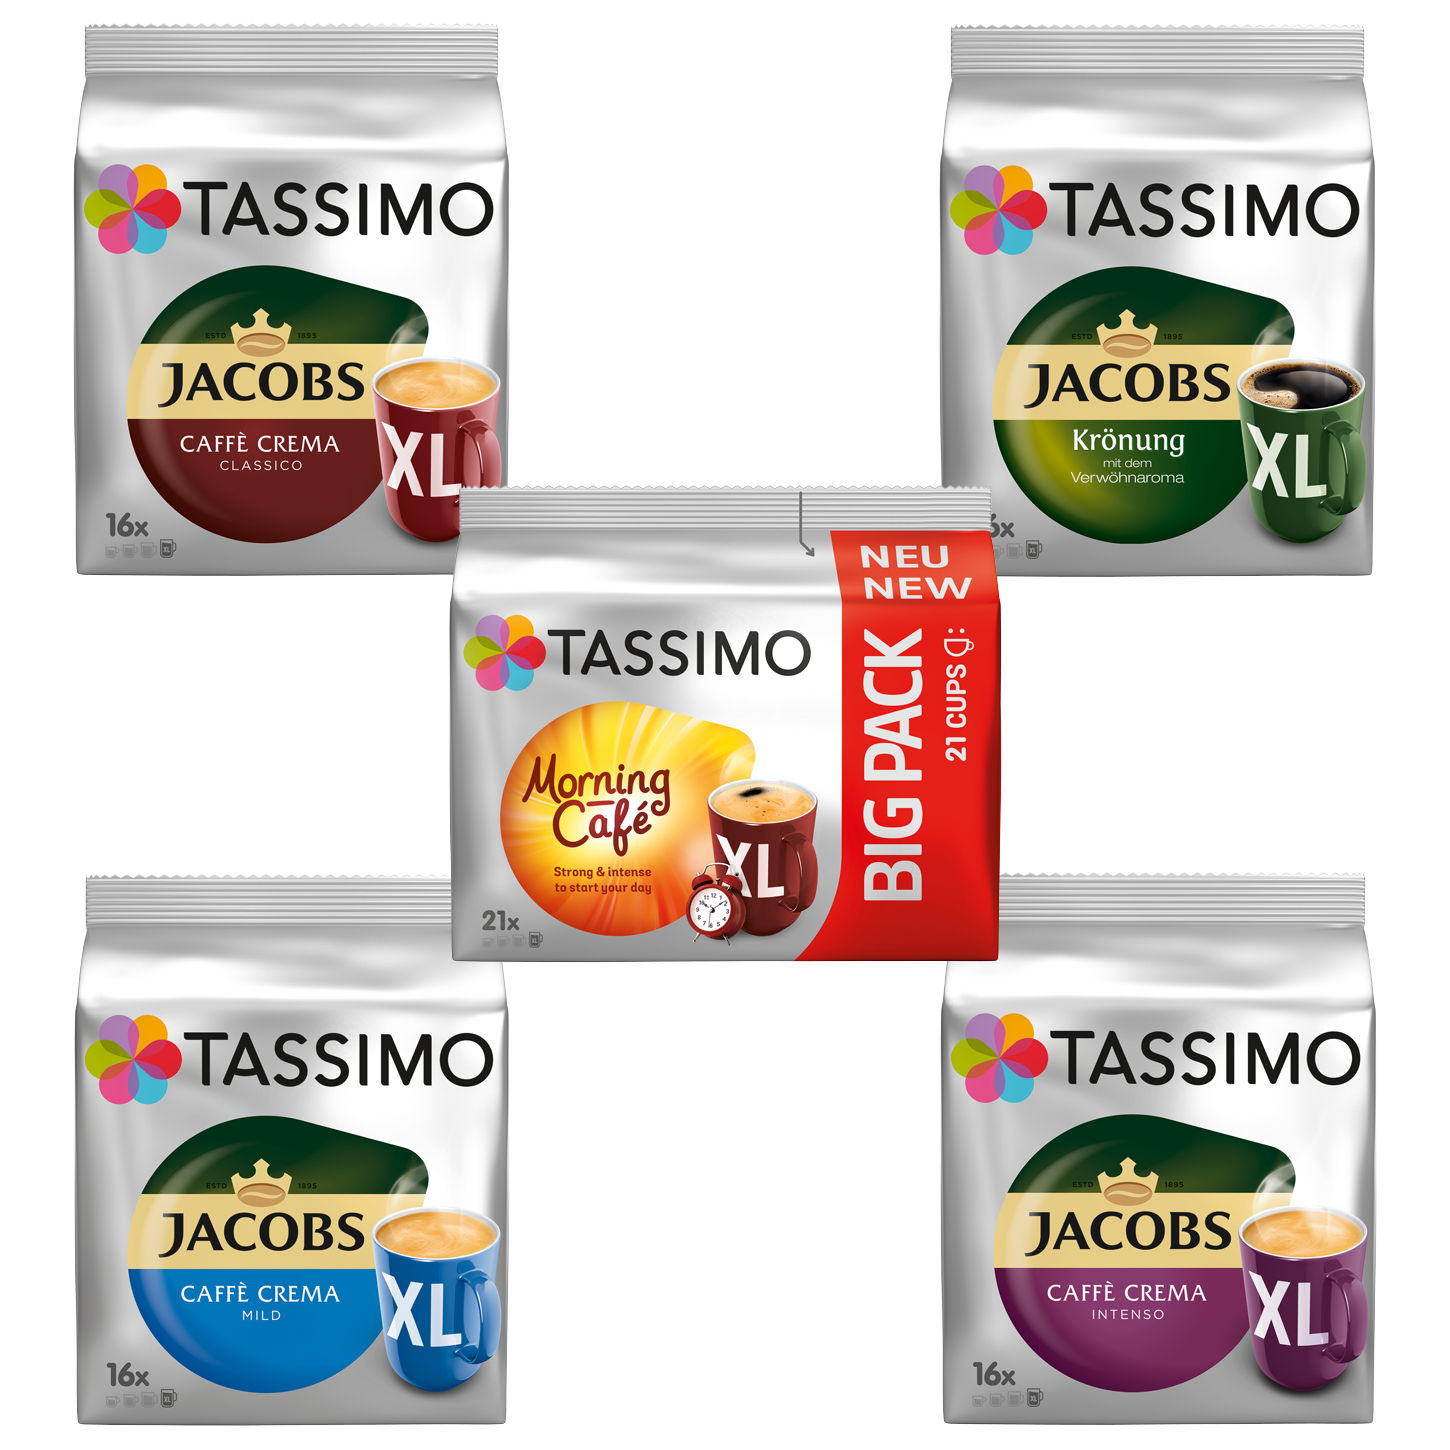 TASSIMO Vielfaltspaket Mild Sorten Becherportionen Krönung Kaffeekapseln XL Intenso Crema Café (Tassimo Maschine (T-Disc System)) 5 Morning